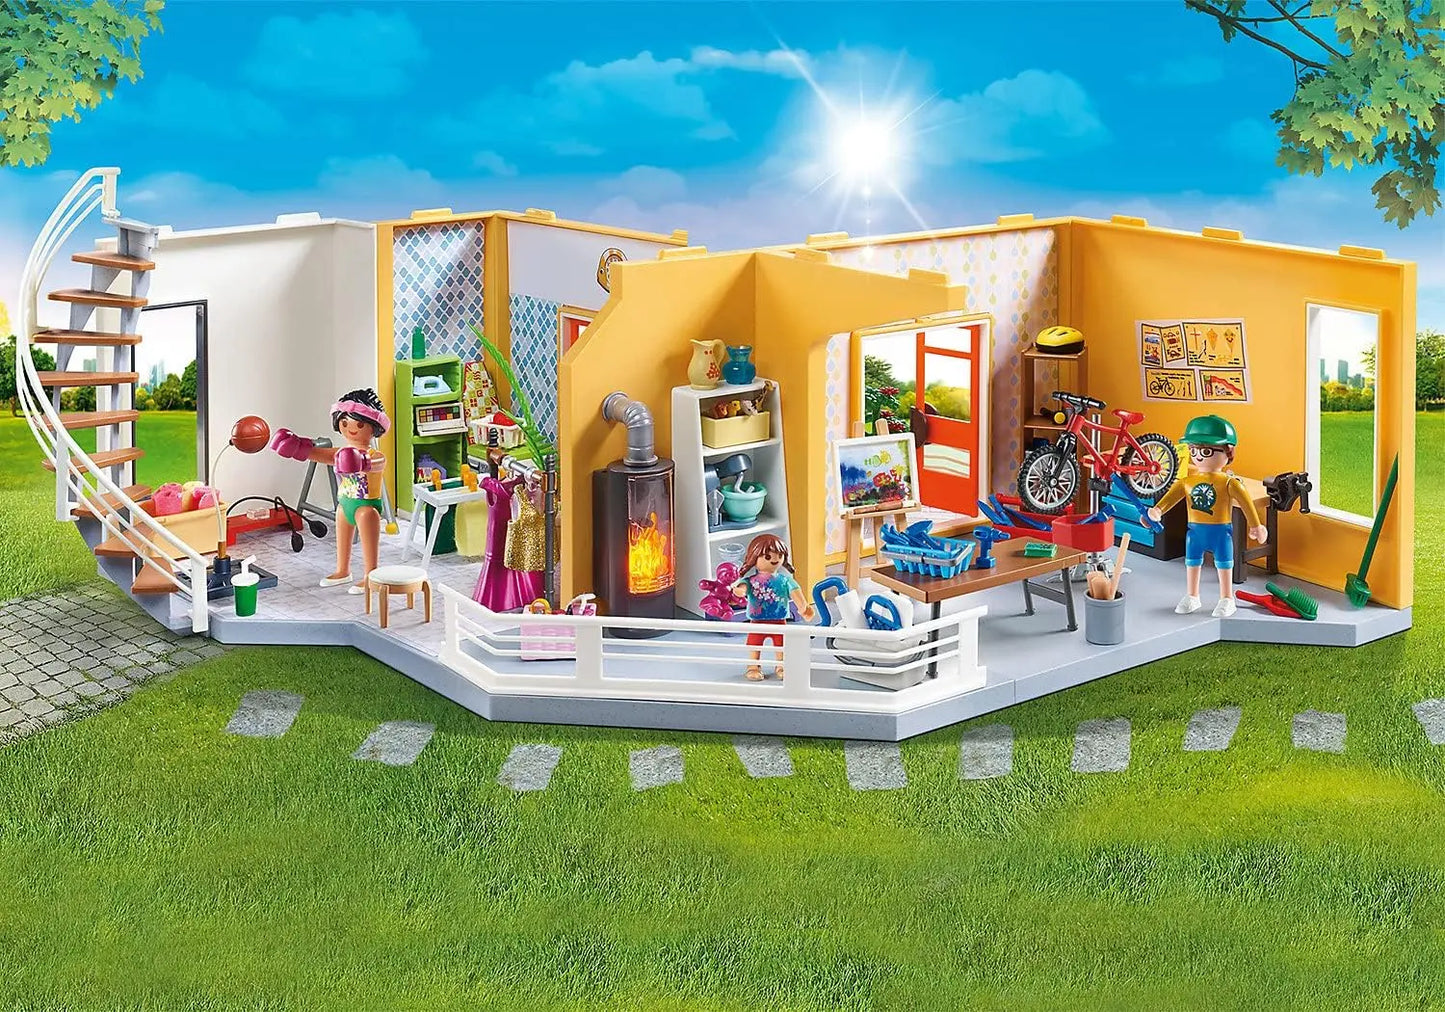 jouet 70986 Playmobil City Life Etage supplémentaire aménagé Maison Moderne lego